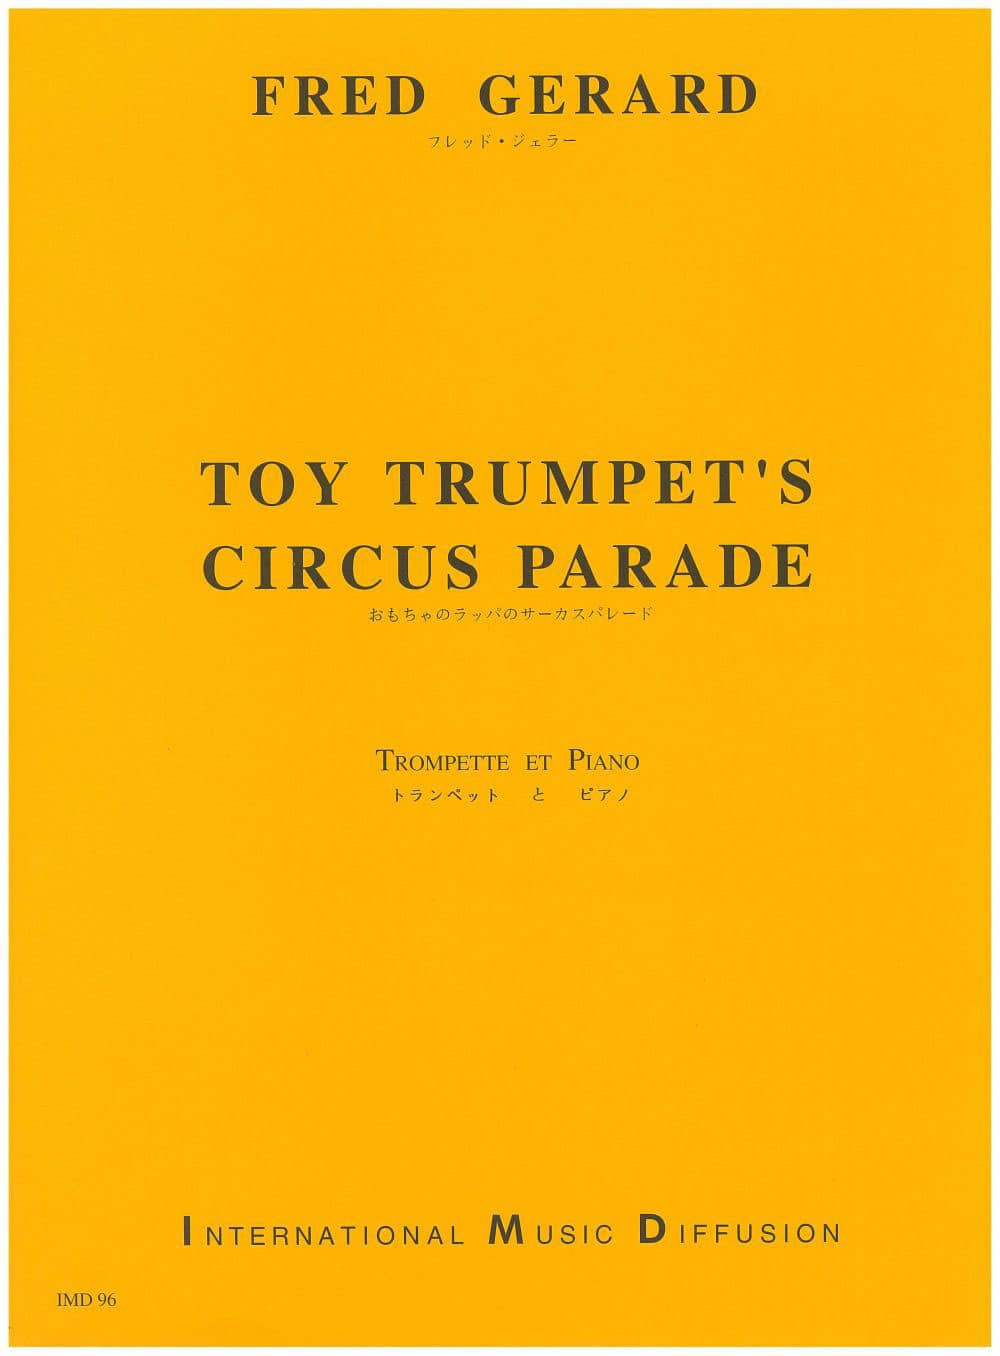 IMD ARPEGES GERARD - TOY TRUMPET'S CIRCUS PARADE - TROMPETTE ET PIANO 